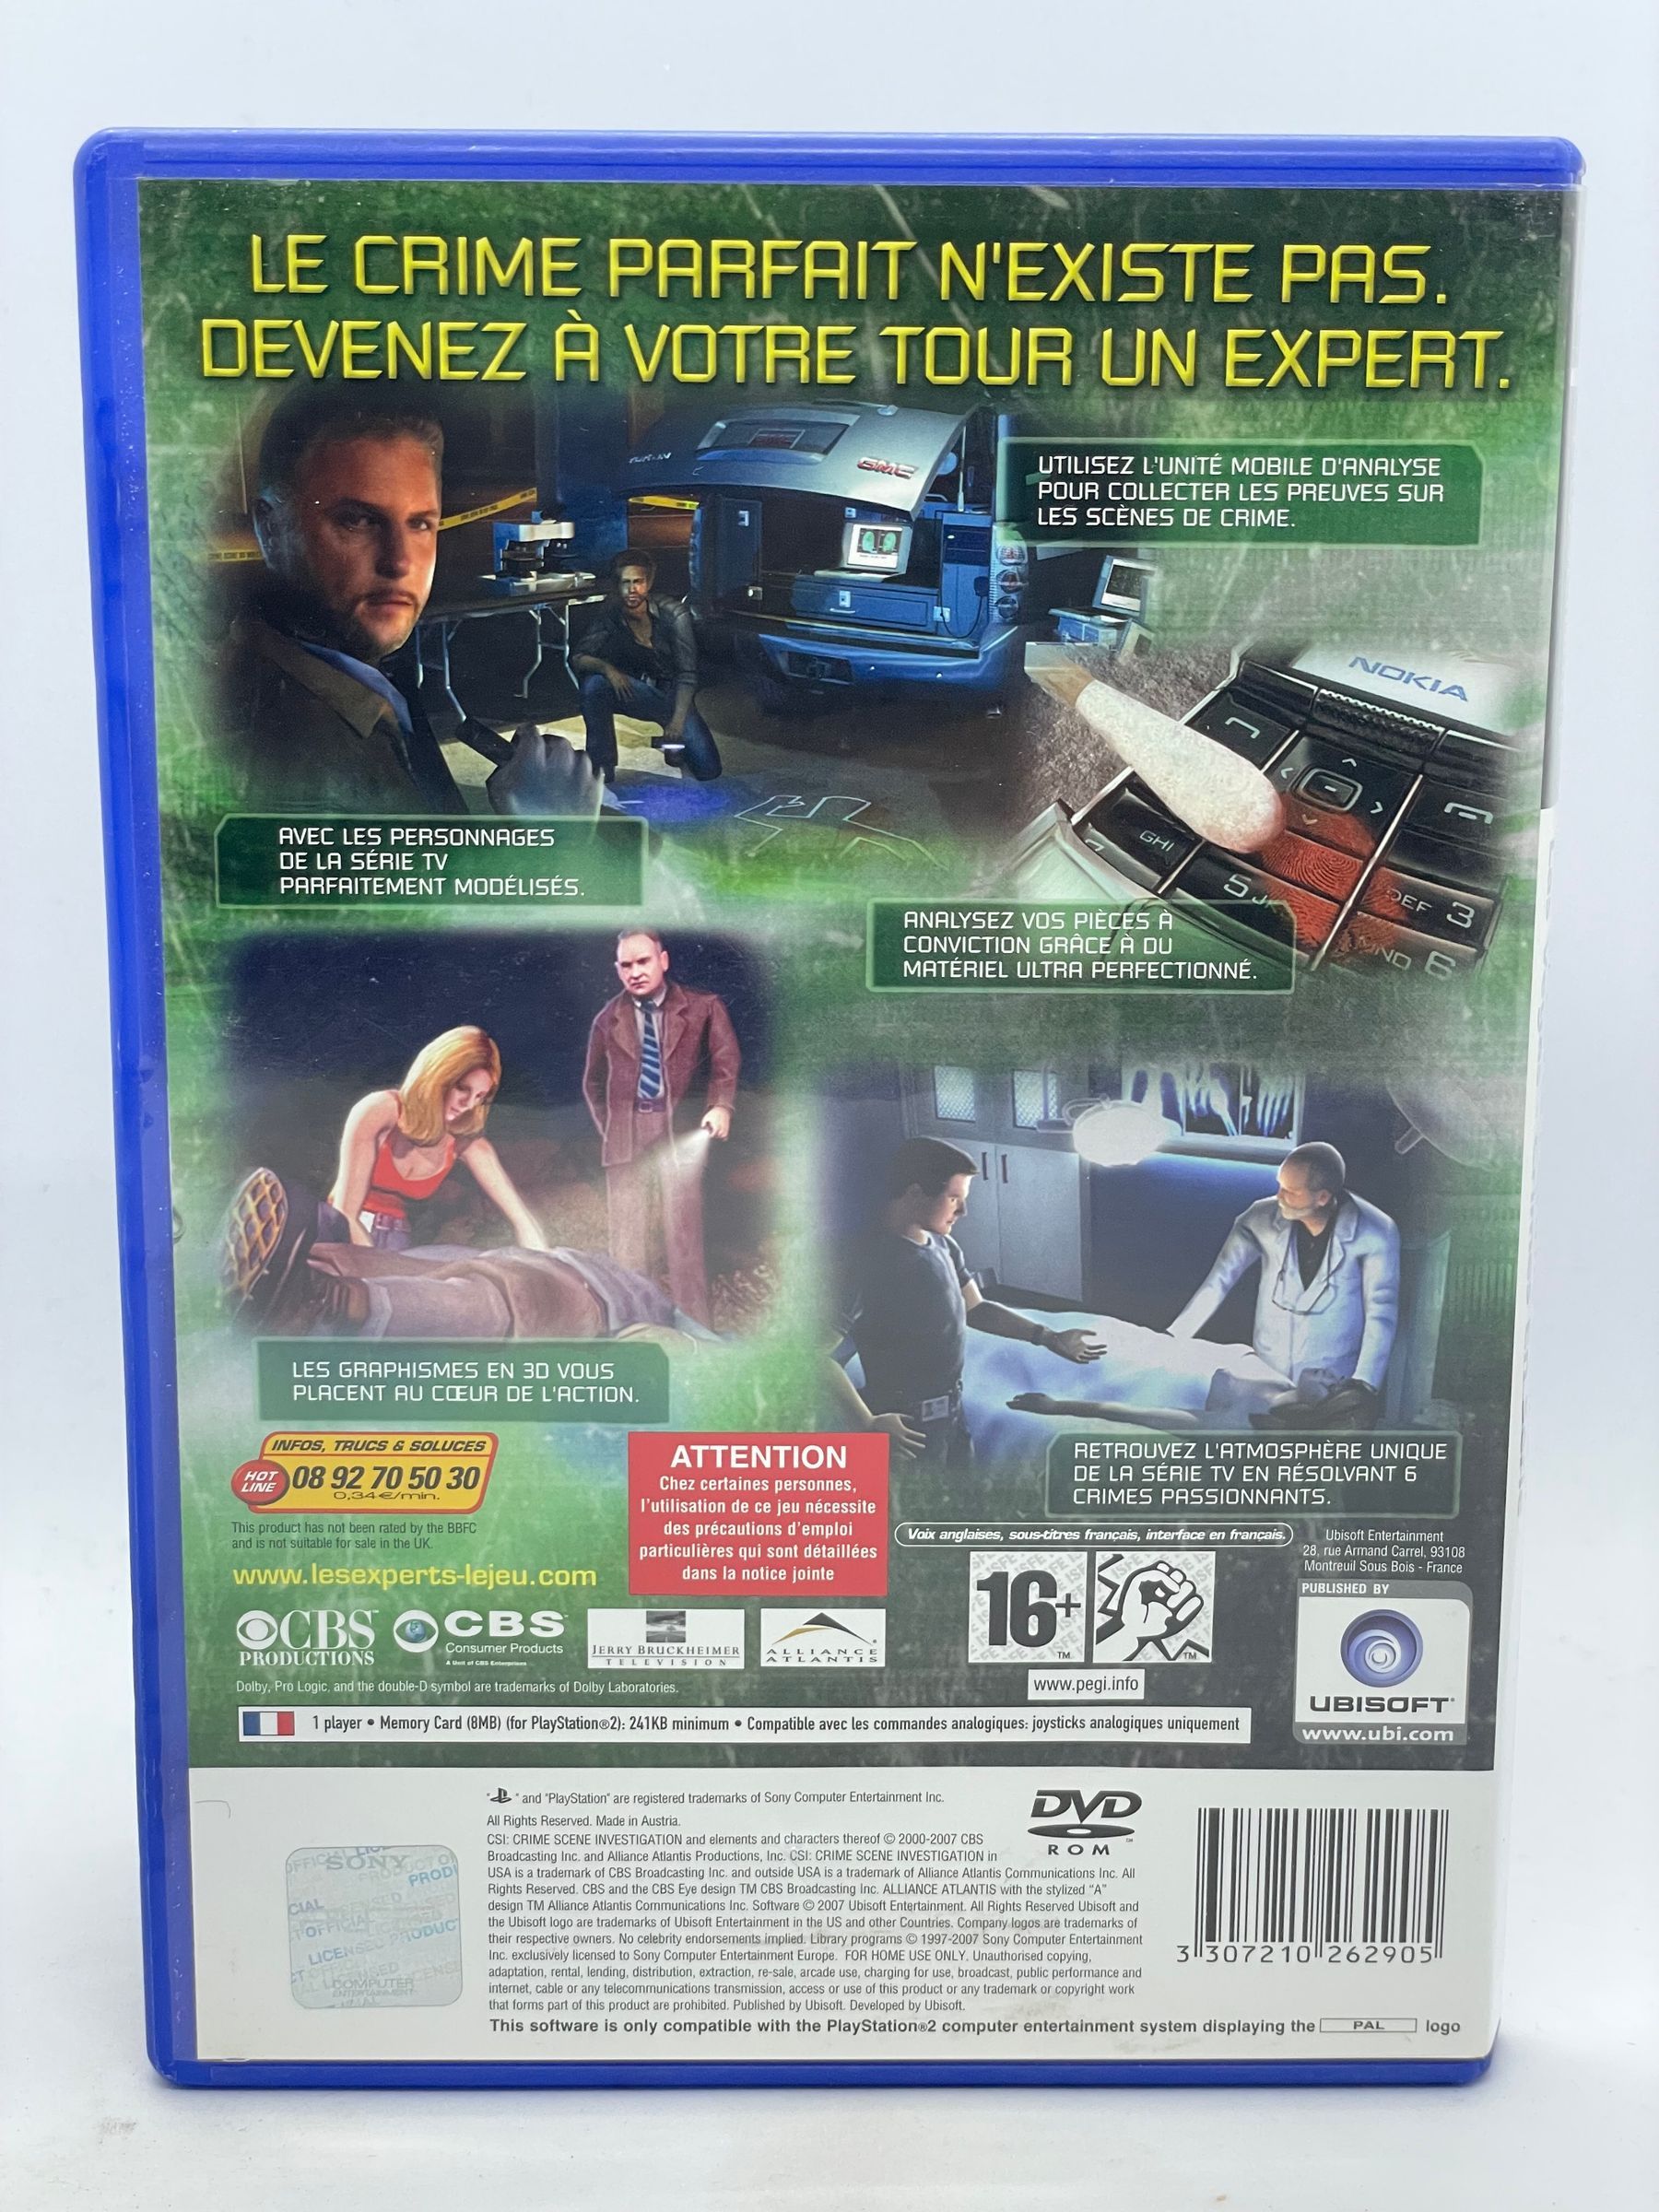 CSI: Crime Scene Investigation: 3 Dimensions of Murder PS2